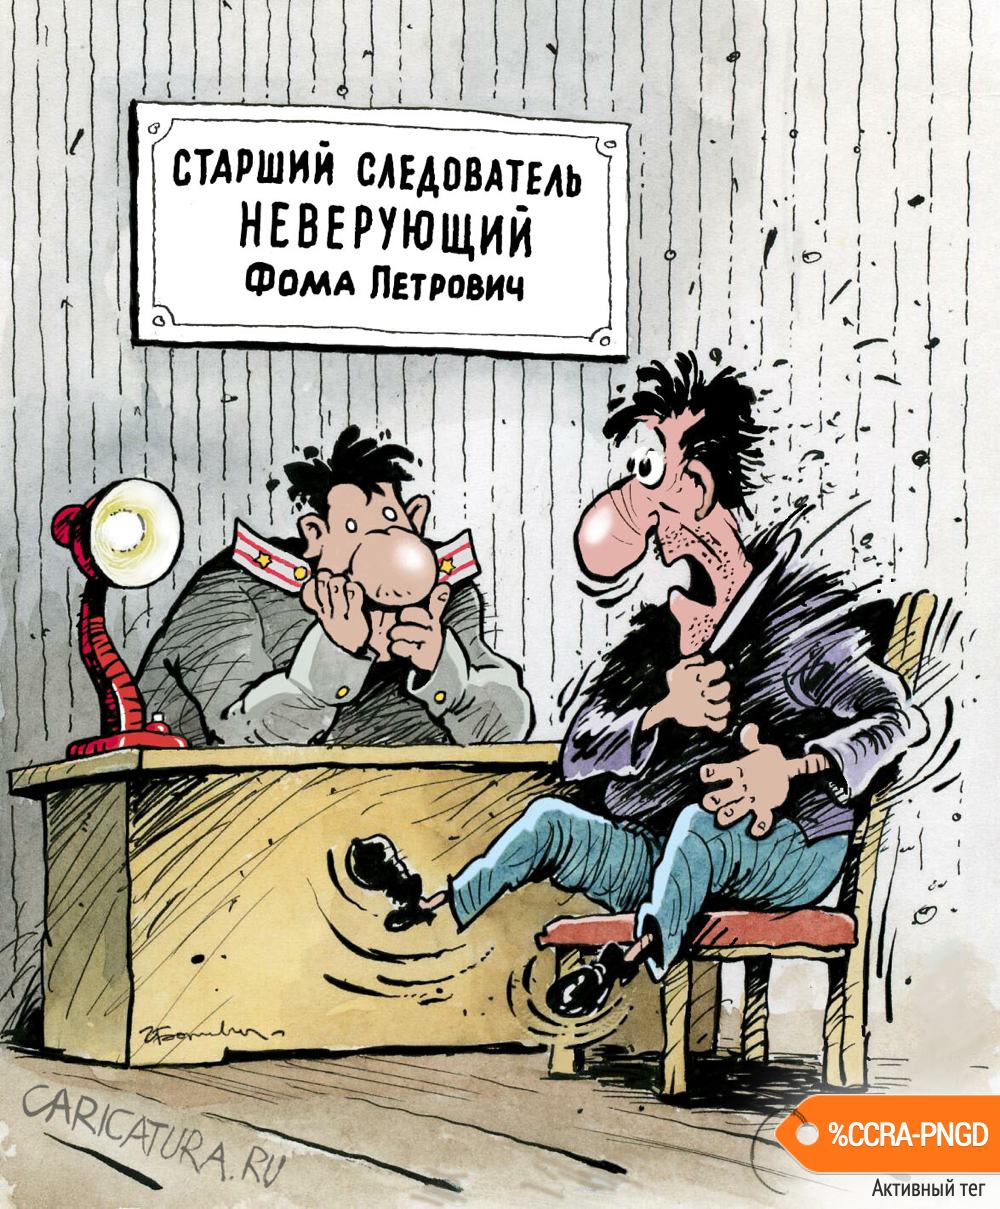 Карикатура "Фома Неверующий", Игорь Елистратов